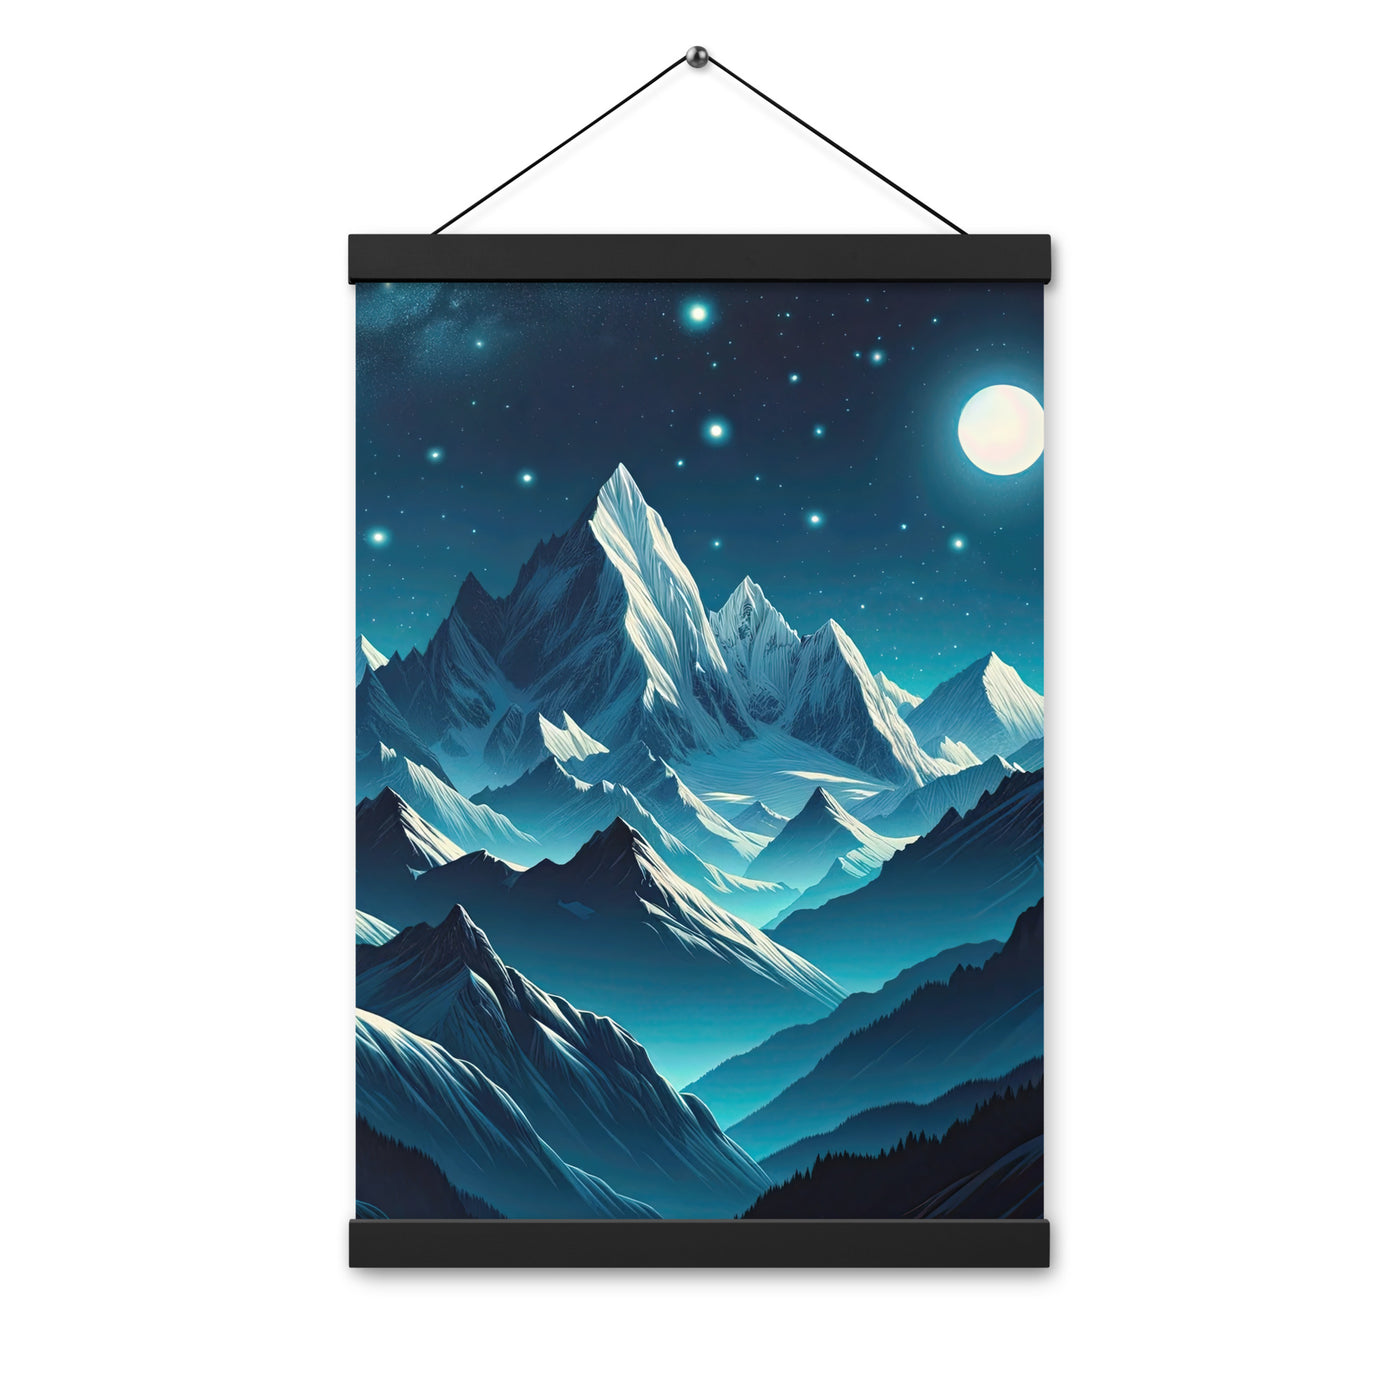 Sternenklare Nacht über den Alpen, Vollmondschein auf Schneegipfeln - Premium Poster mit Aufhängung berge xxx yyy zzz 30.5 x 45.7 cm